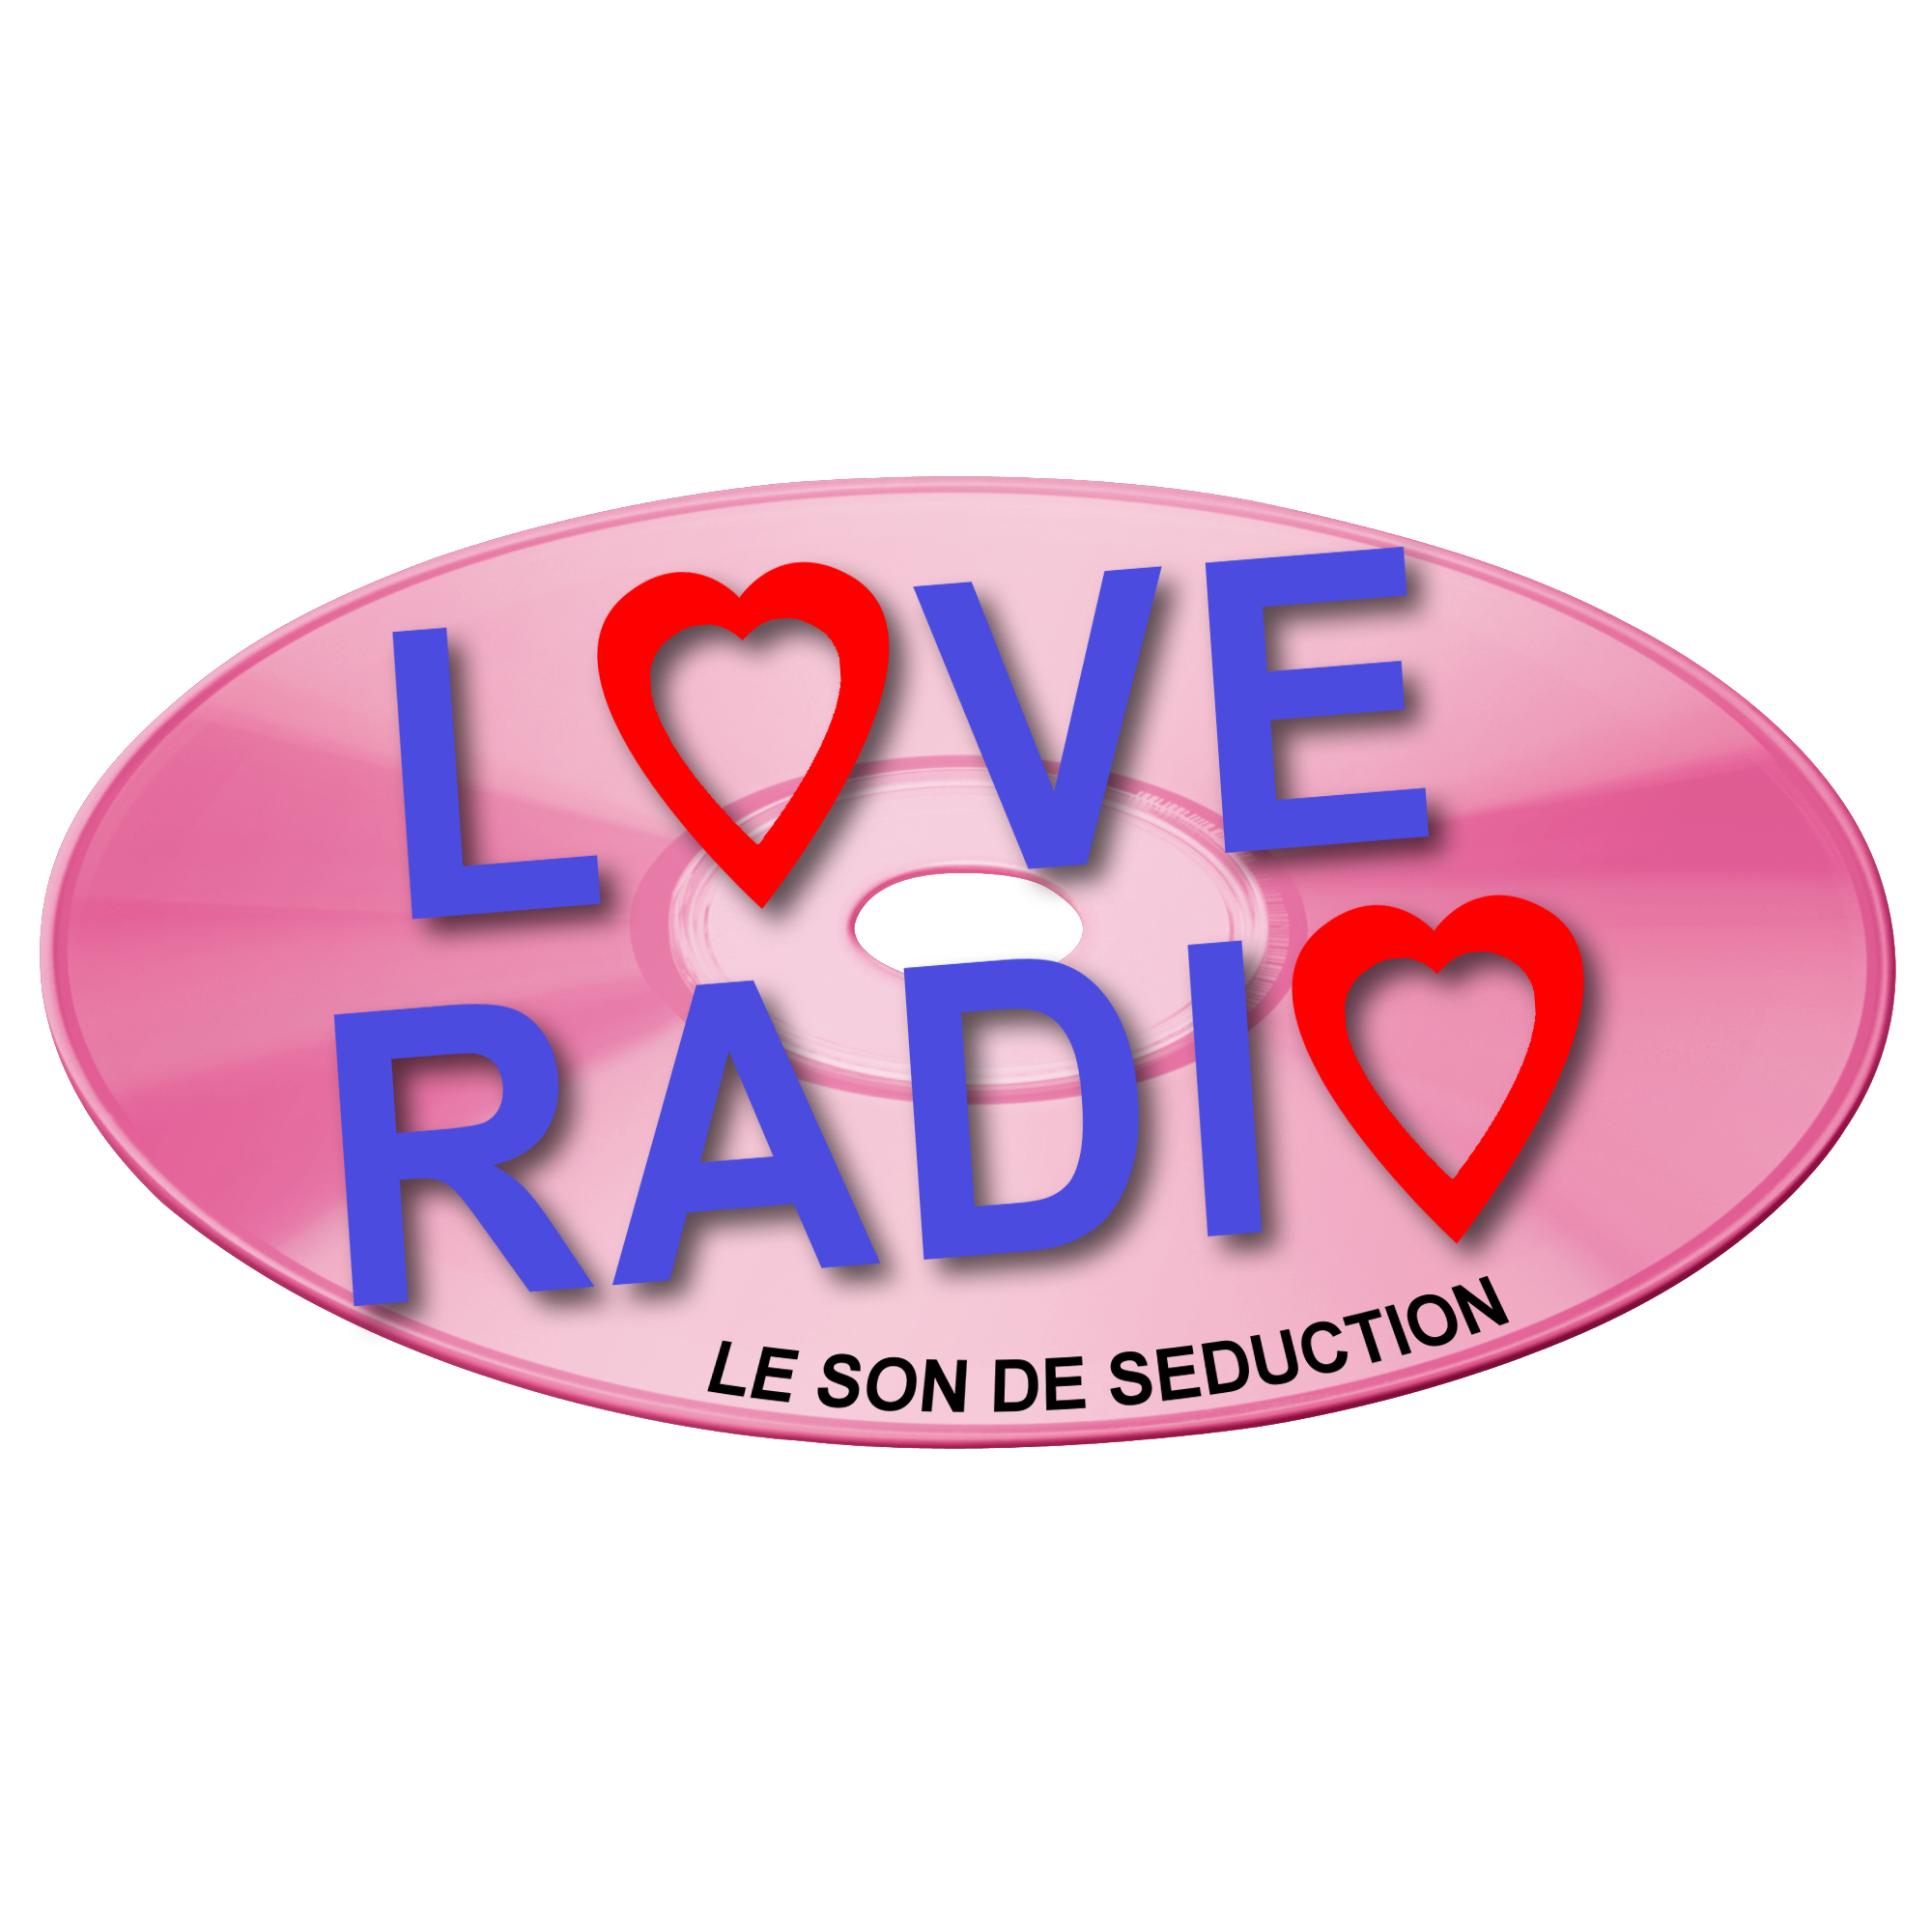 Радио любимые хиты слушать. Love радио. Лав радио логотип. Любимое радио. Любовное радио.